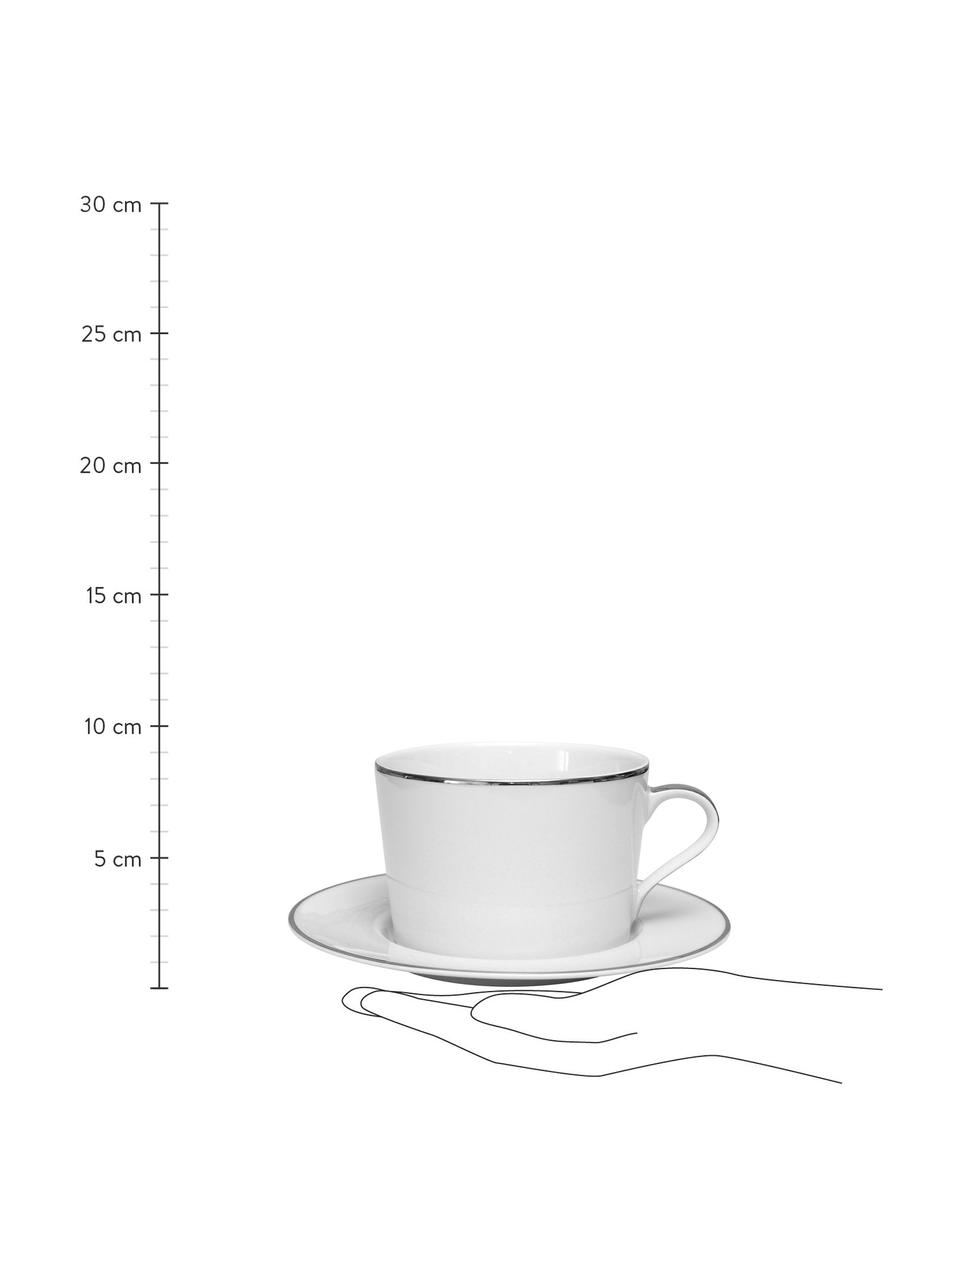 Tasse à café avec sous-tasse en porcelaine bord argenté Ginger, 2 pièces, Porcelaine, Blanc, couleur argentée, Ø 17 x haut. 8 cm